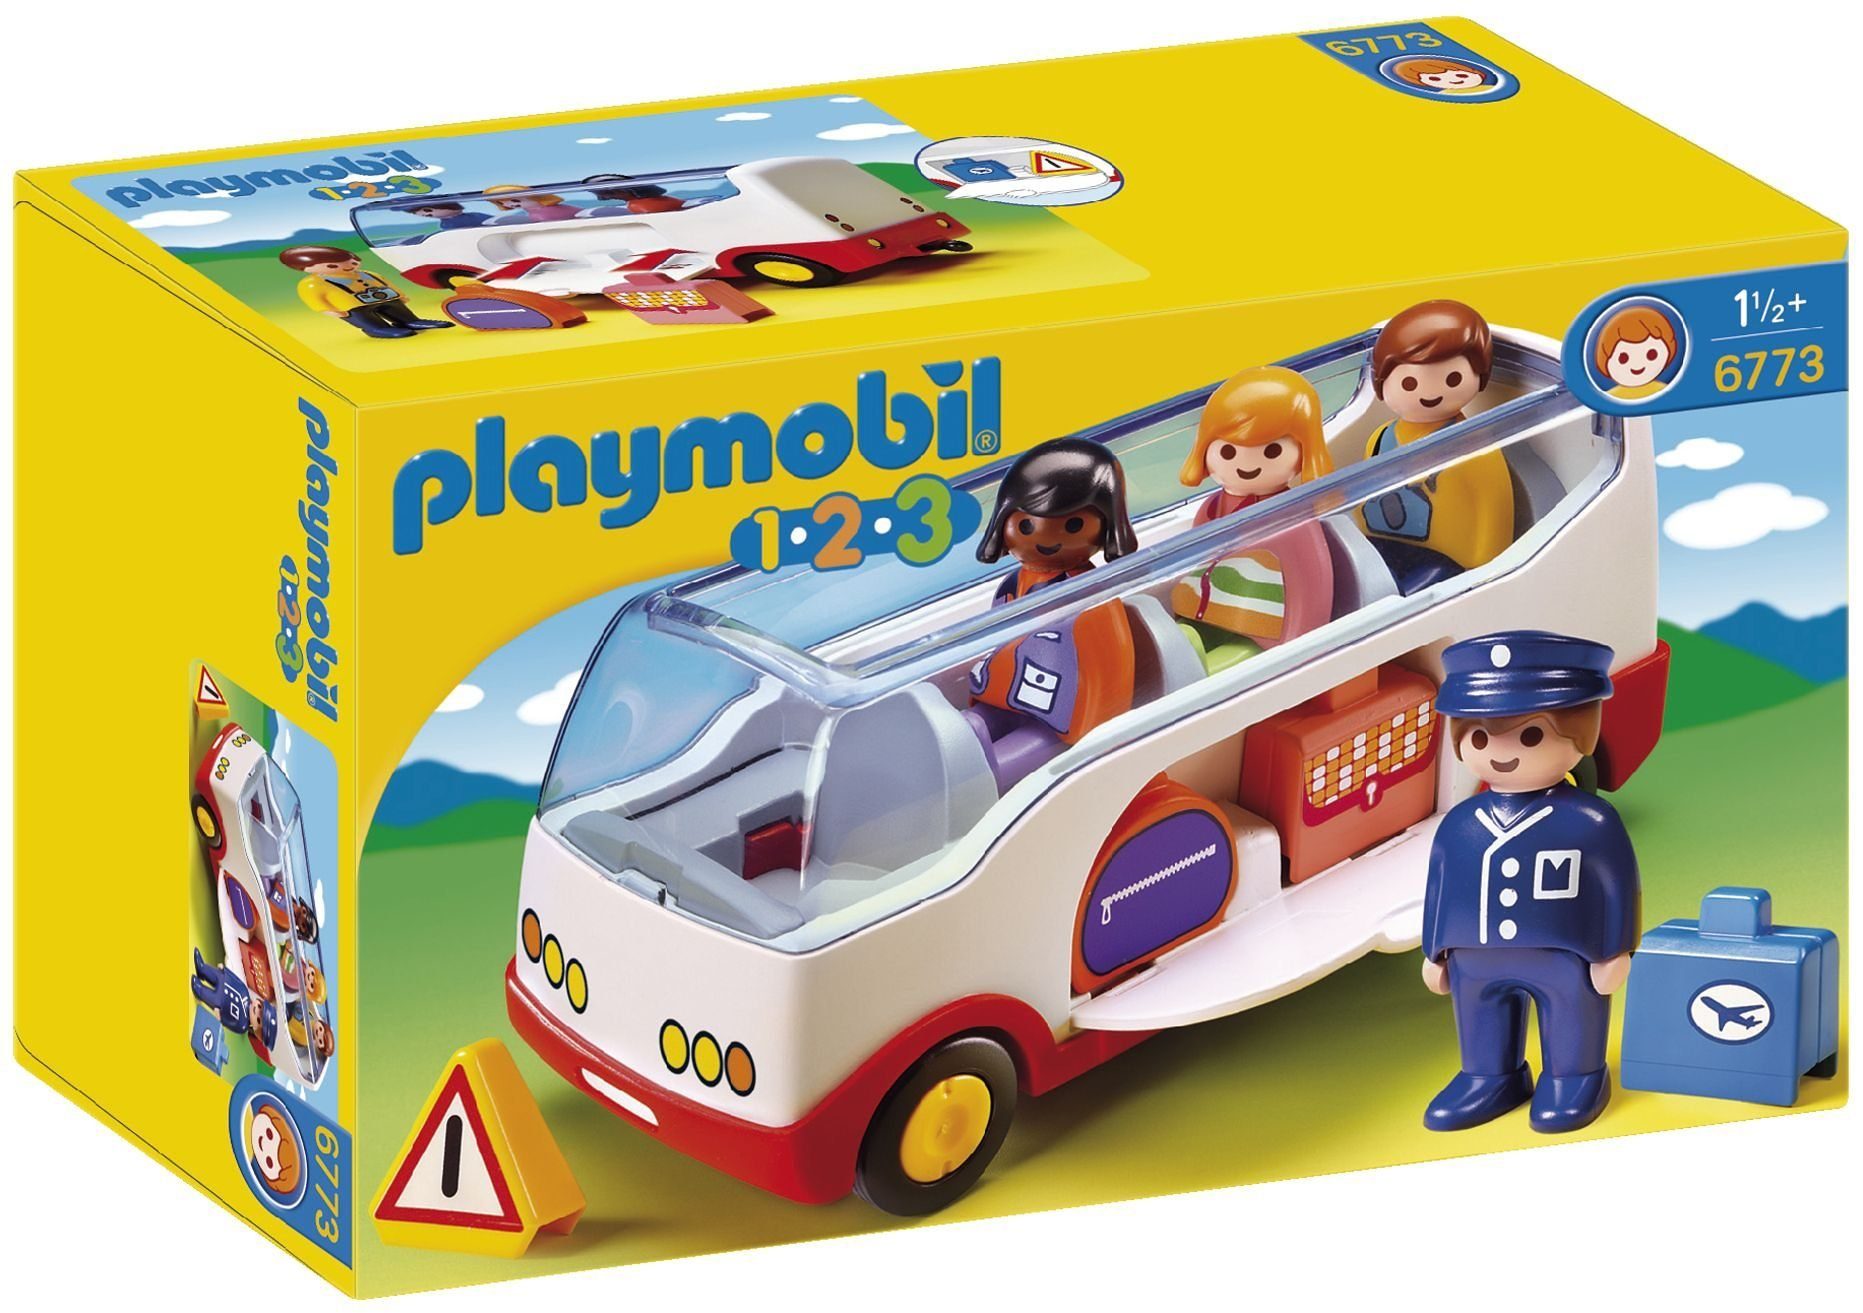 Playmobil Konstruktions-Spielset Made (6773), Reisebus Playmobil® in Europe 1-2-3,